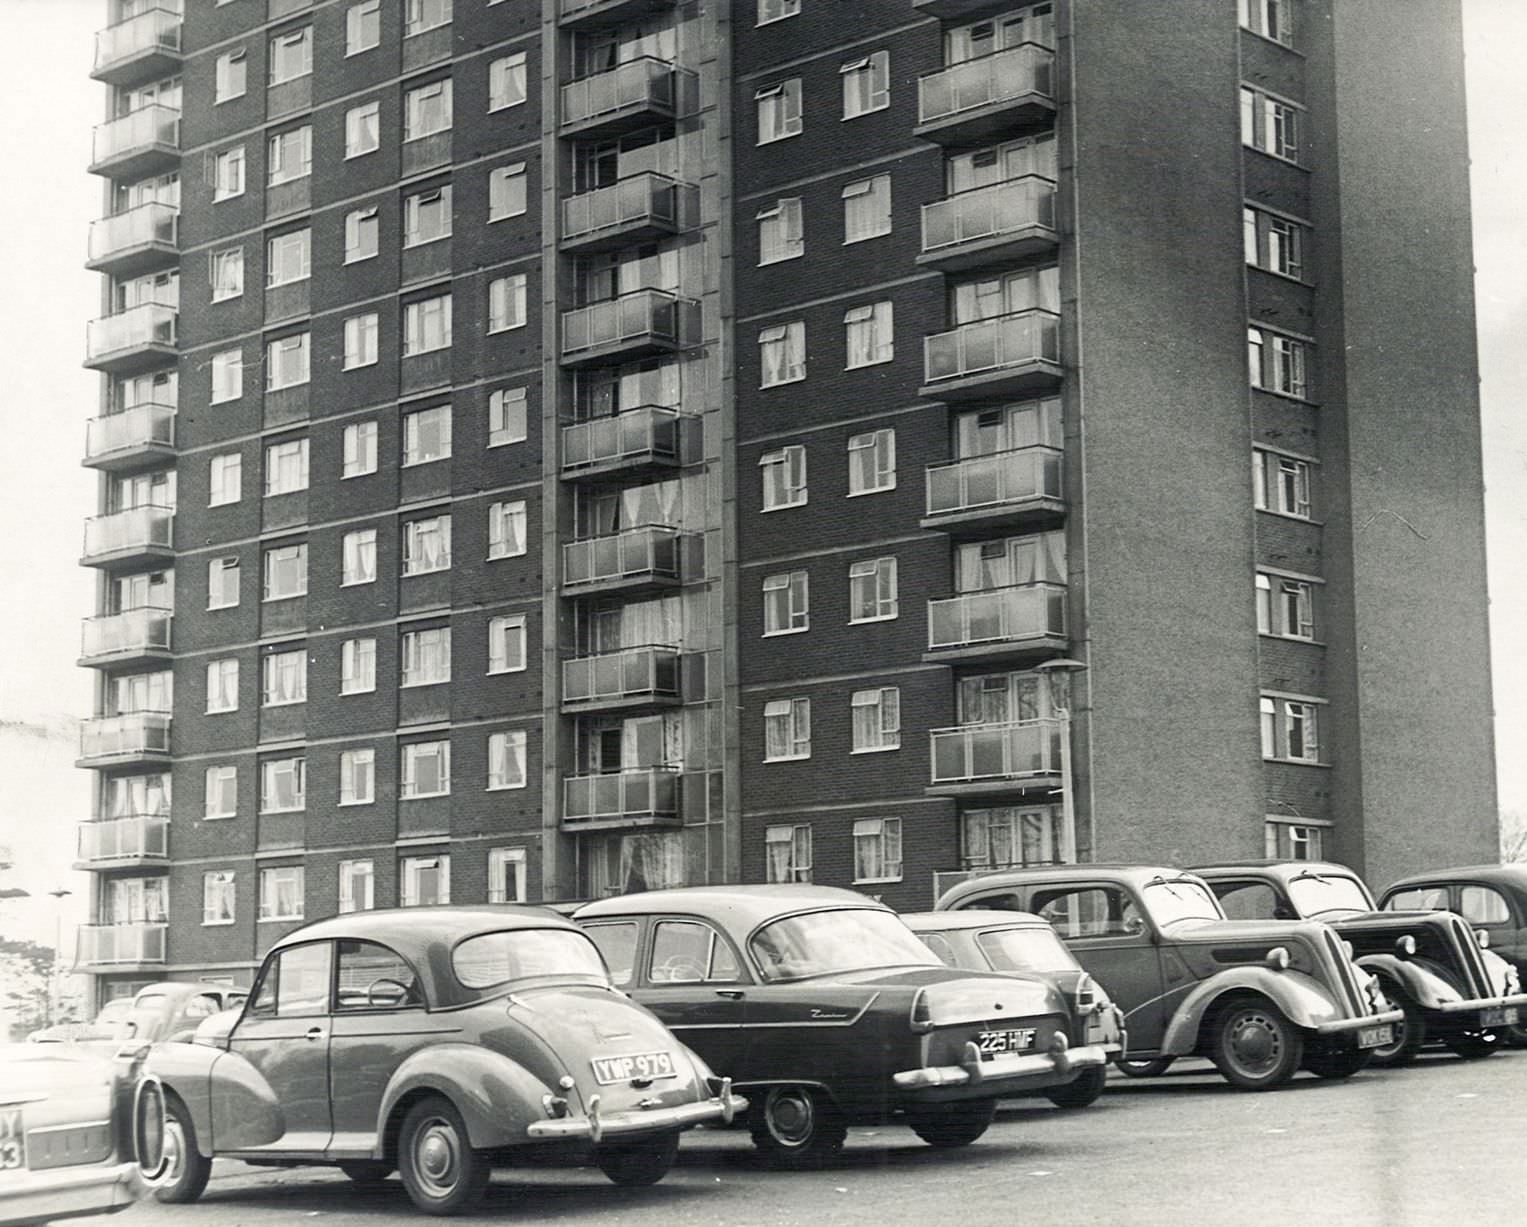 The Lyndhurst Estate in Erdington, in 1963.